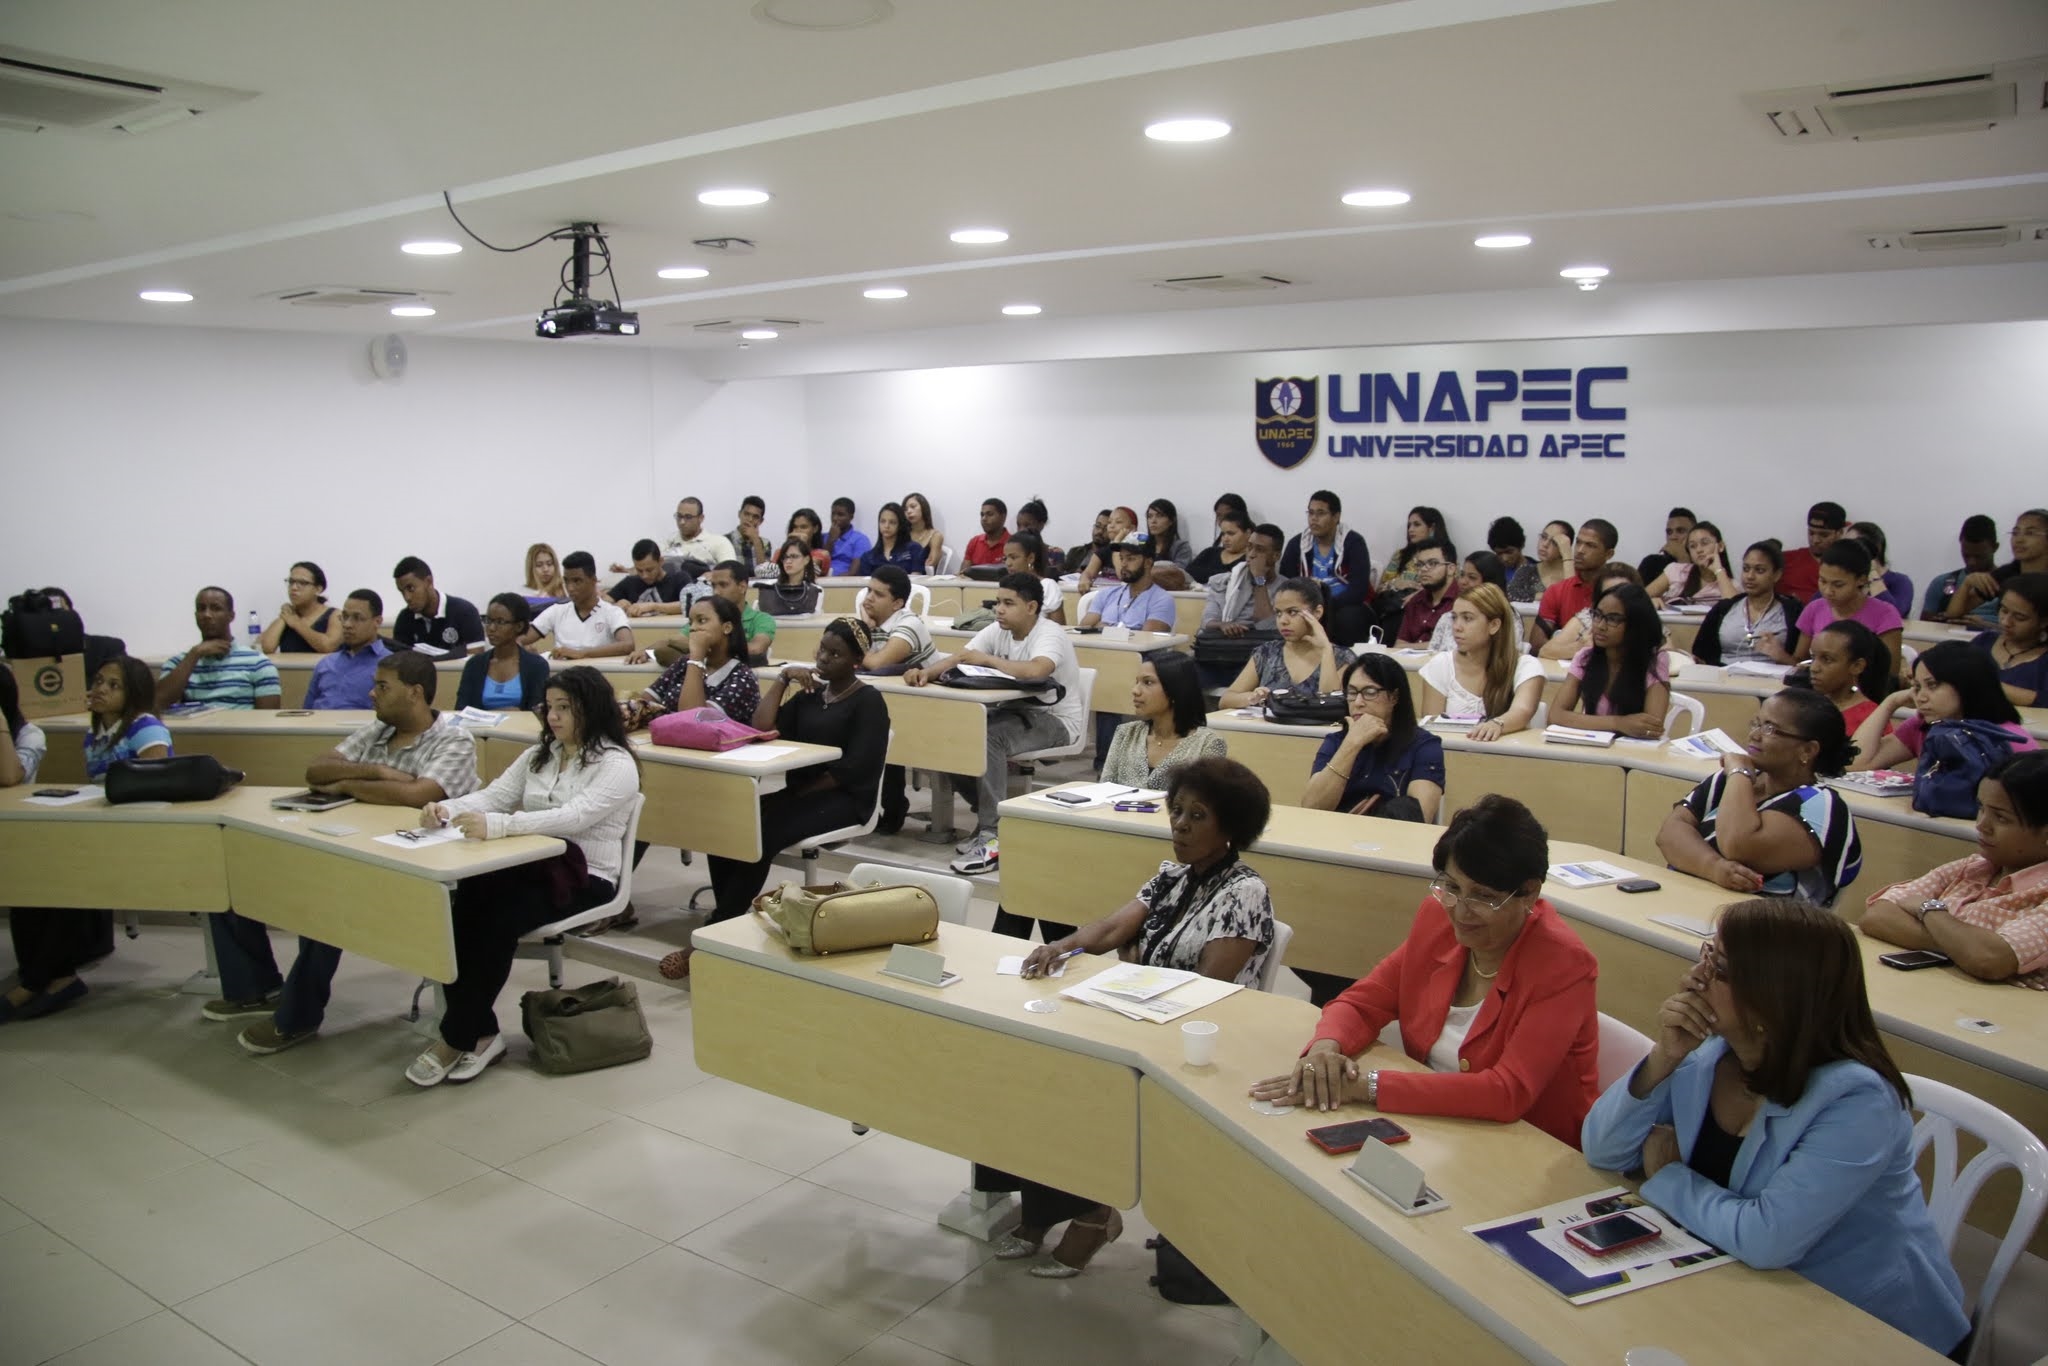 La actividad fue realizada en el Salón de Conferencias, ubicado en el Edif. I de UNAPEC.